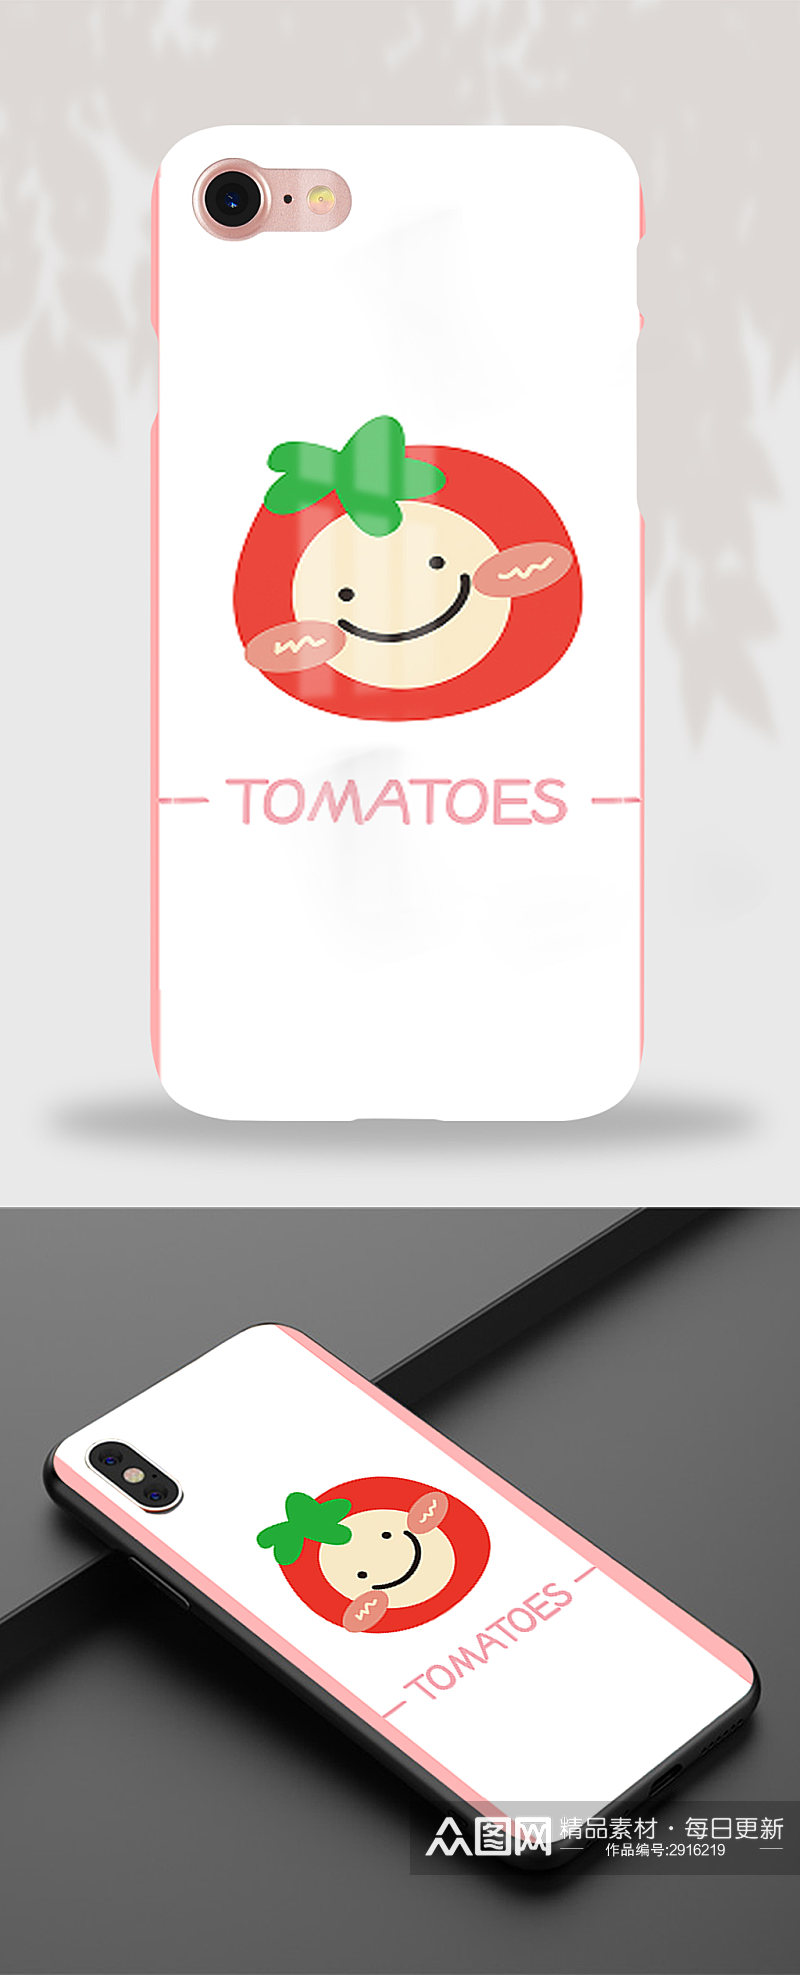 79原创可爱卡通西红柿番茄手机壳素材